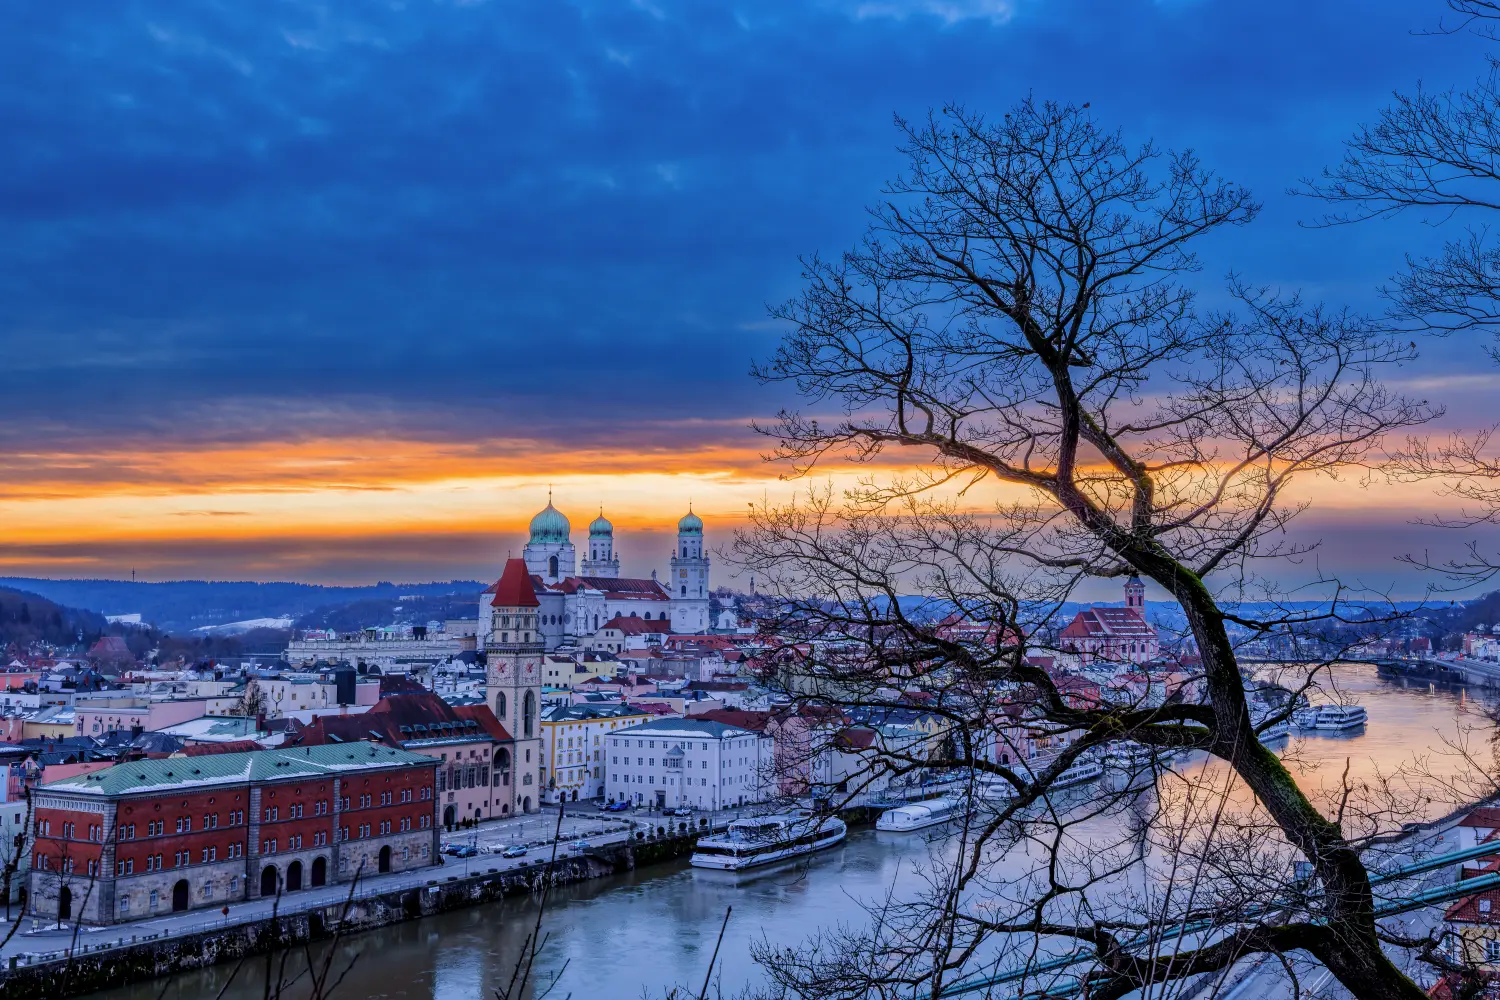 Sonnenuntergang an einem Winterabend über Passau, Bayern, Deutschland.